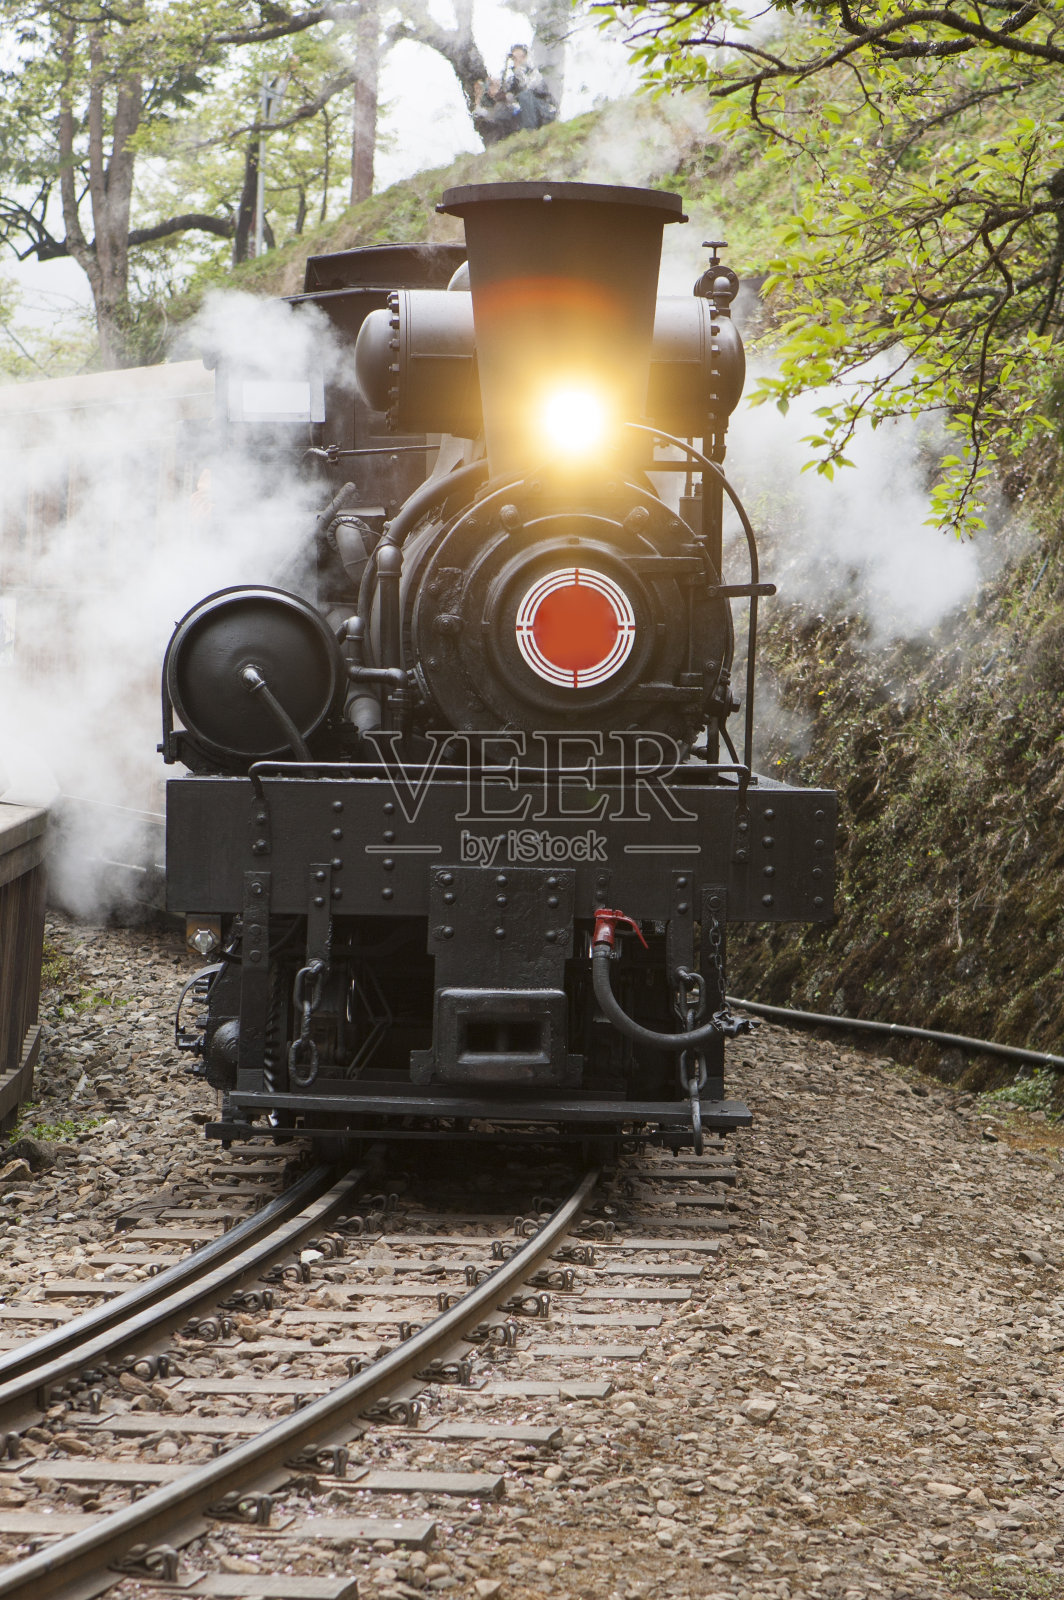 100,000+张最精彩的“蒸汽火车”图片 · 100%免费下载 · Pexels素材图片